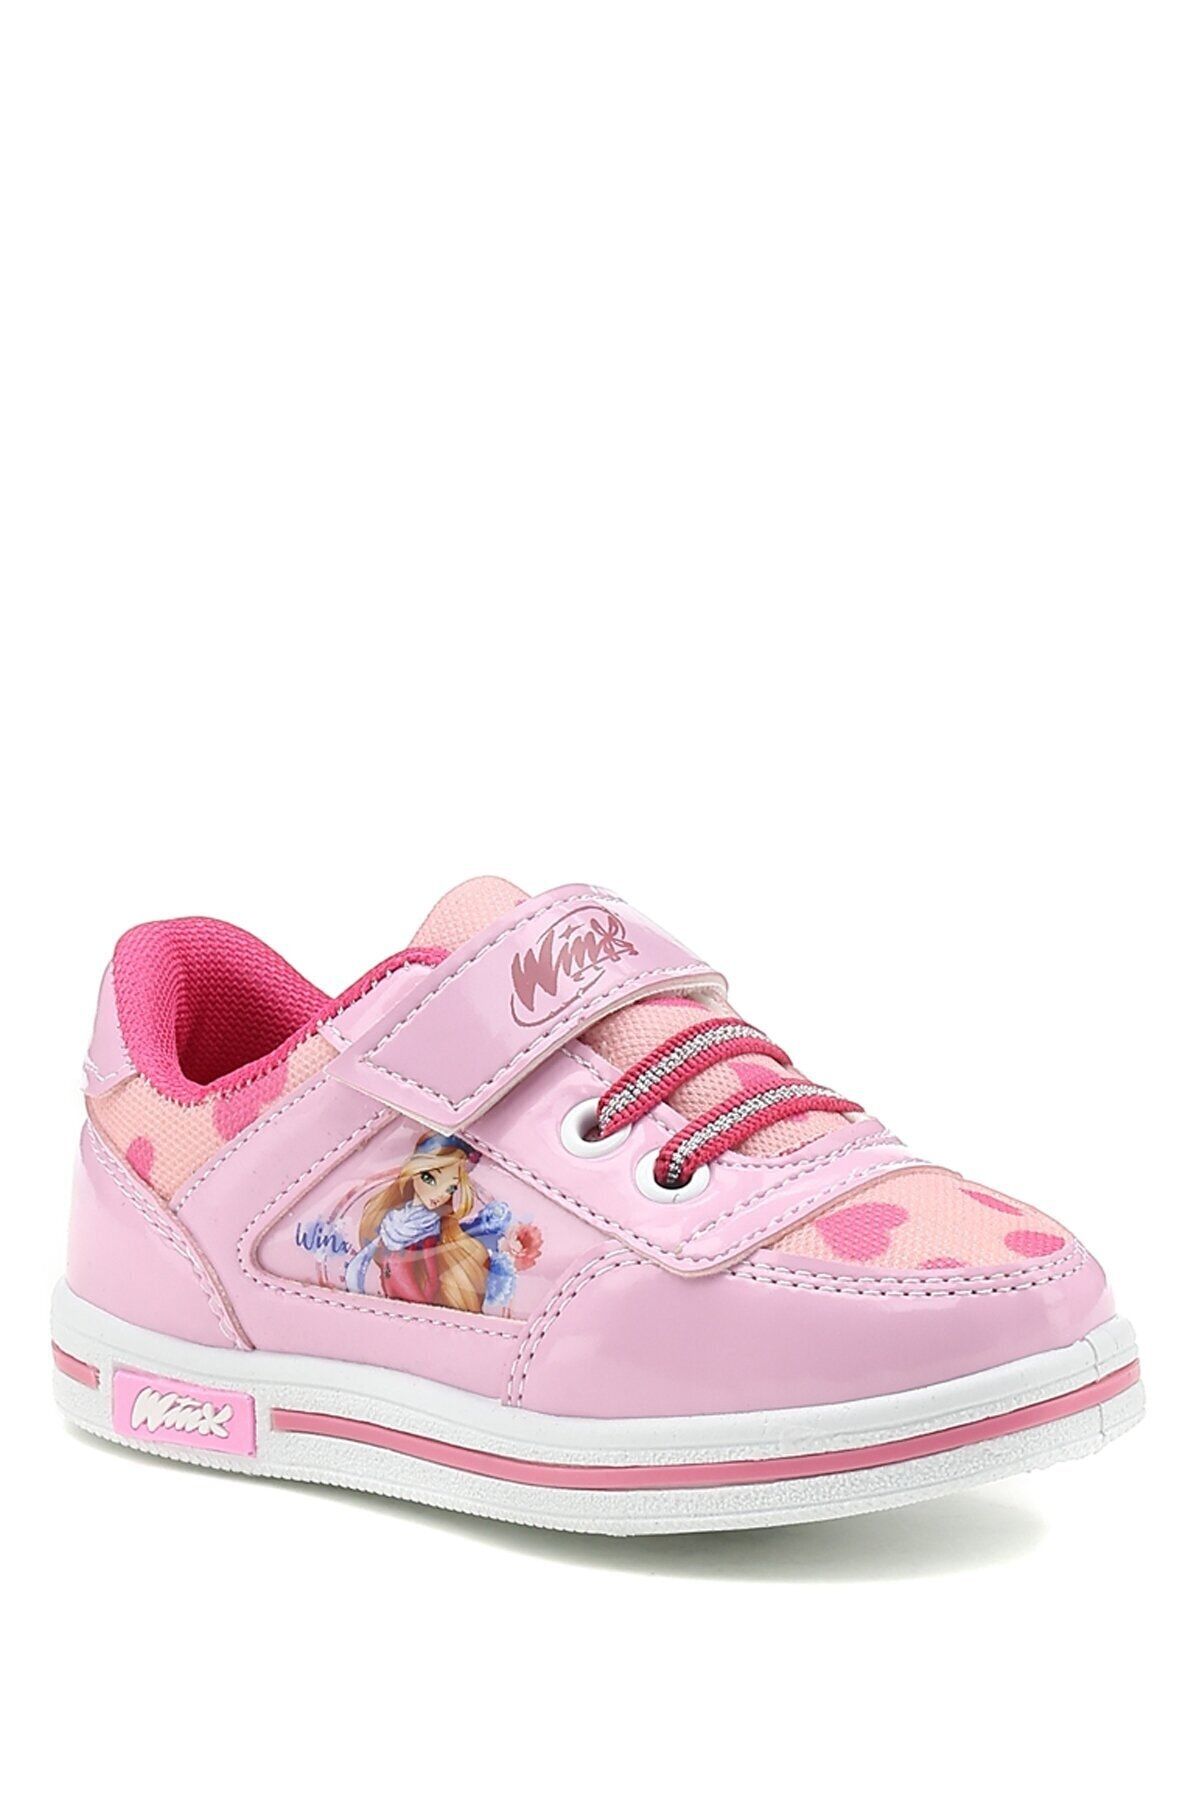 Winx Valerı.p2fx Pembe Kız Çocuk Sneaker